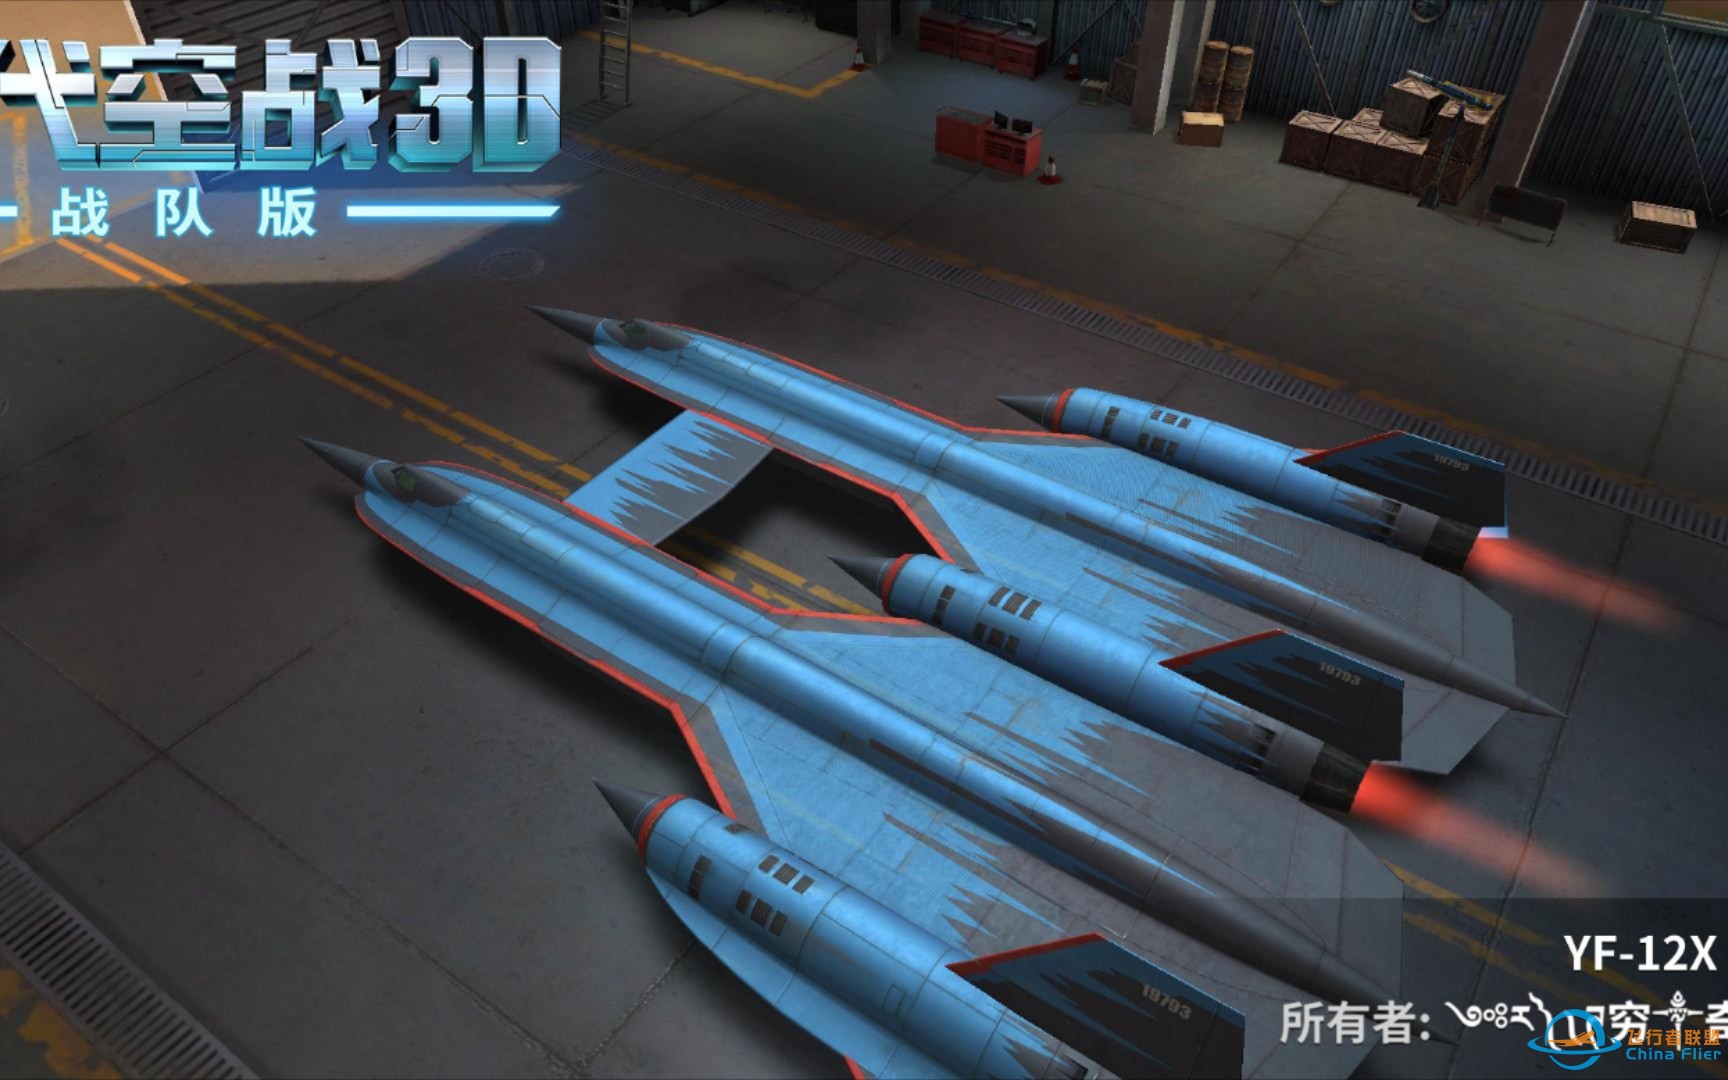 【罗辑】《现代空战3D》实战中导弹的实际伤害值究竟是多少呢-4740 